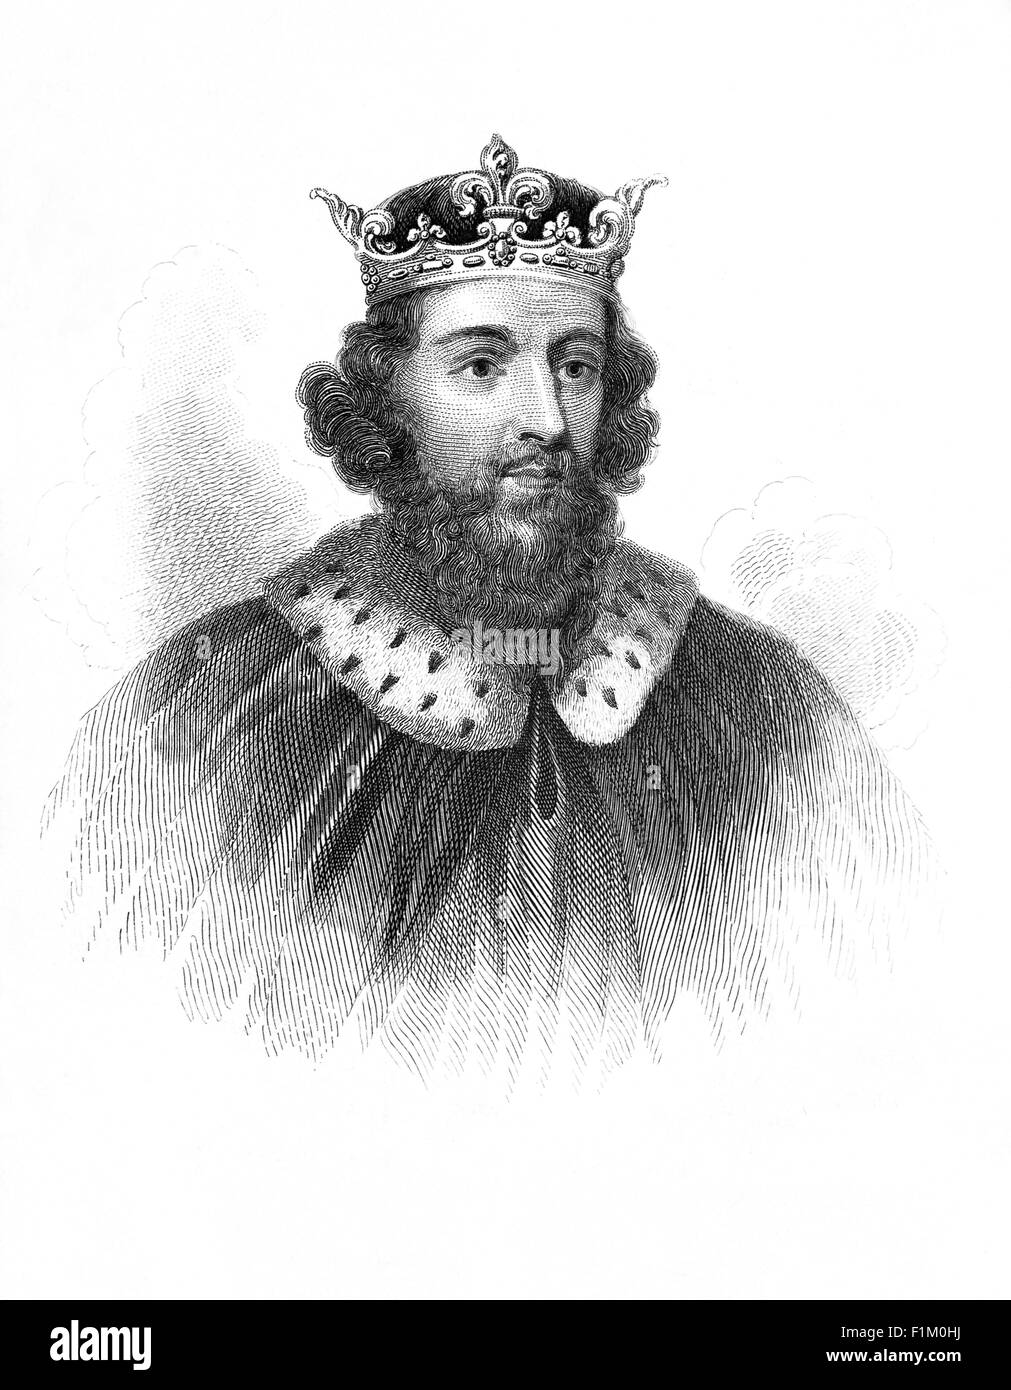 Re Alfred (849-899AD), detto Alfred il Grande, re dei Sassoni Occidentali dal 871-886 e re degli Anglo-Sassoni dal 886-99 fu considerato il primo re d'Inghilterra. Dopo l'ascesa del trono, Alfred passò diversi anni combattendo le invasioni vichinghe vincendo una vittoria decisiva nella battaglia di Edington nel 878 e prese un accordo con i Vichinghi, creando ciò che era noto come Danelaw nel nord dell'Inghilterra. Alfred ha anche supervisionato la conversione del leader vichingo Guthrum al cristianesimo. Difese il suo regno contro il tentativo vichingo di conquista, diventando il dominatore d'Inghilterra. Foto Stock